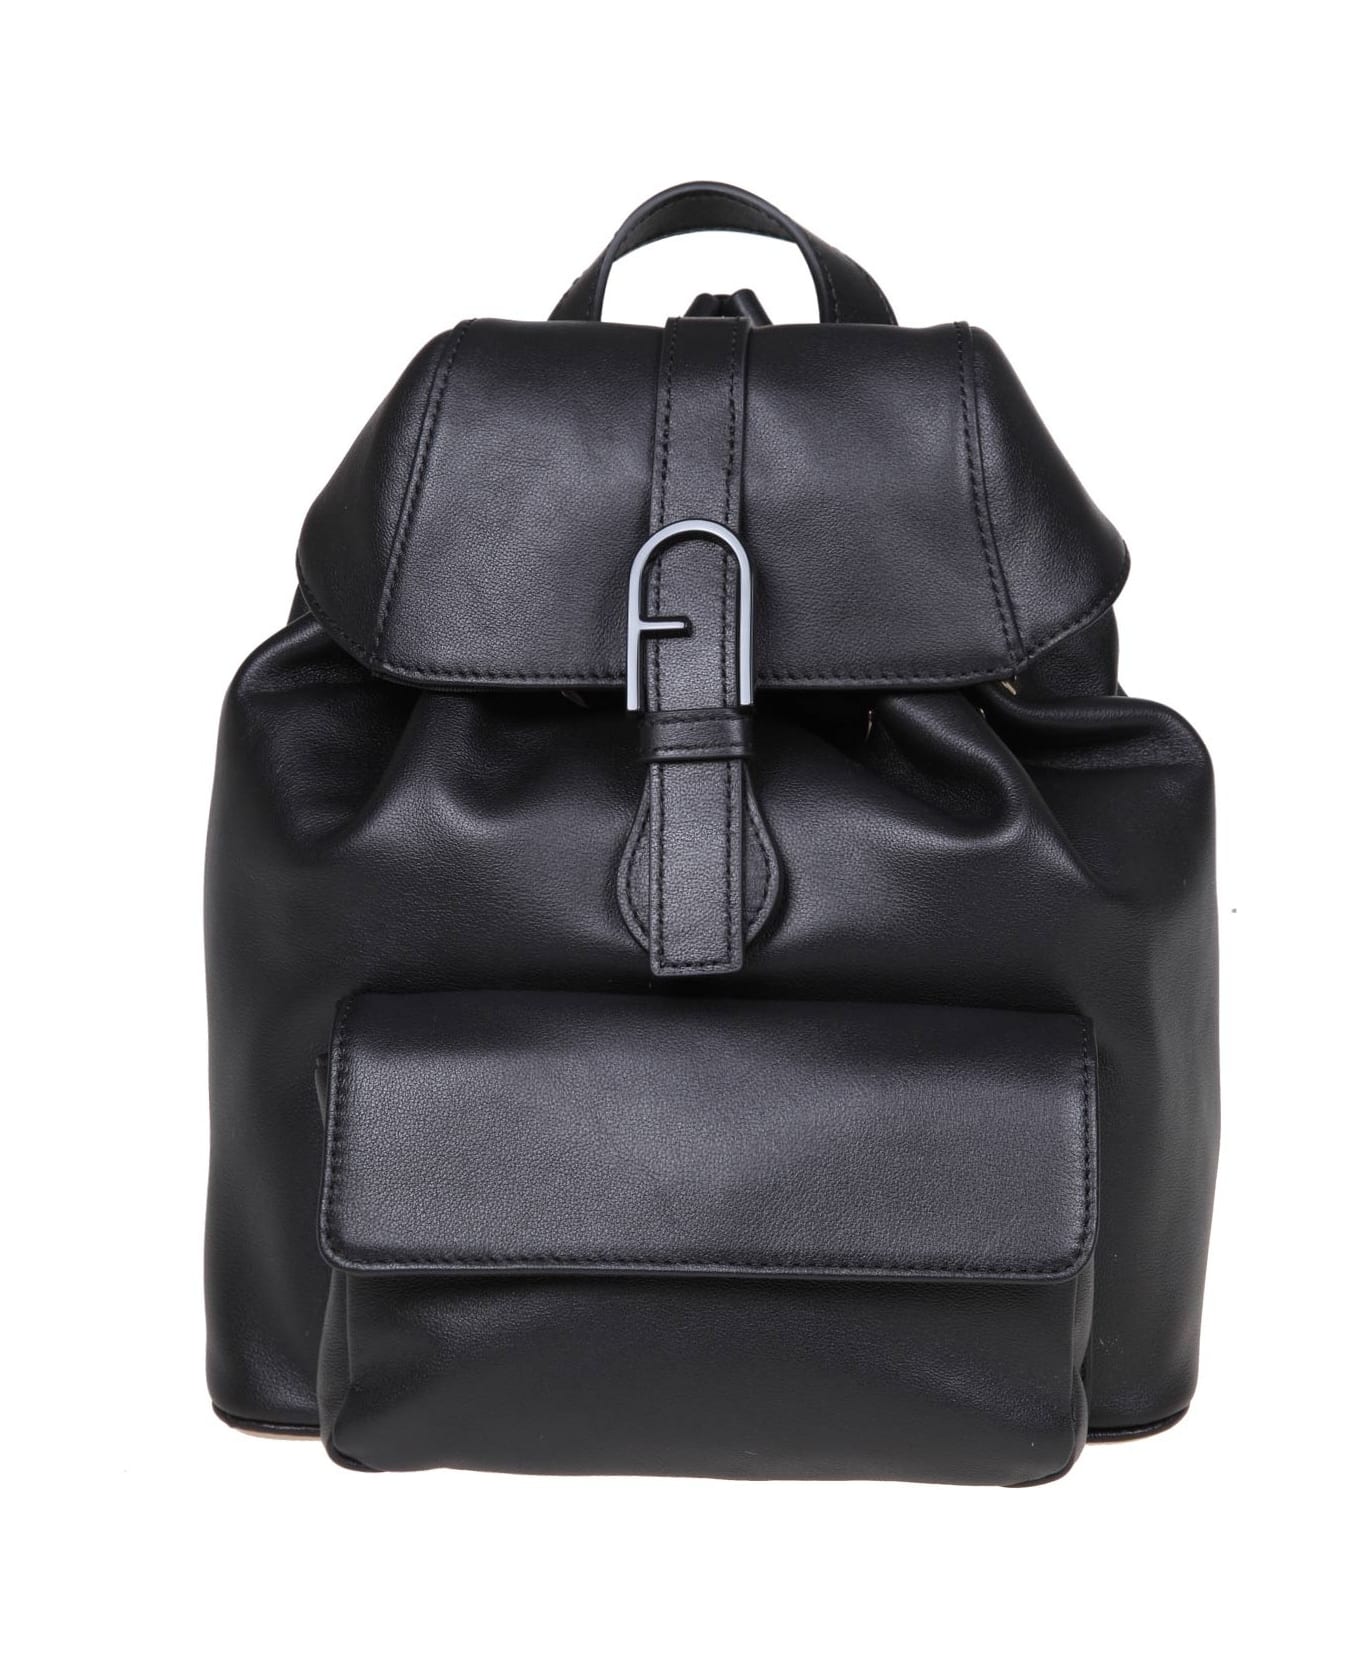 Furla Flow S Black Leather Backpack - Black バックパック